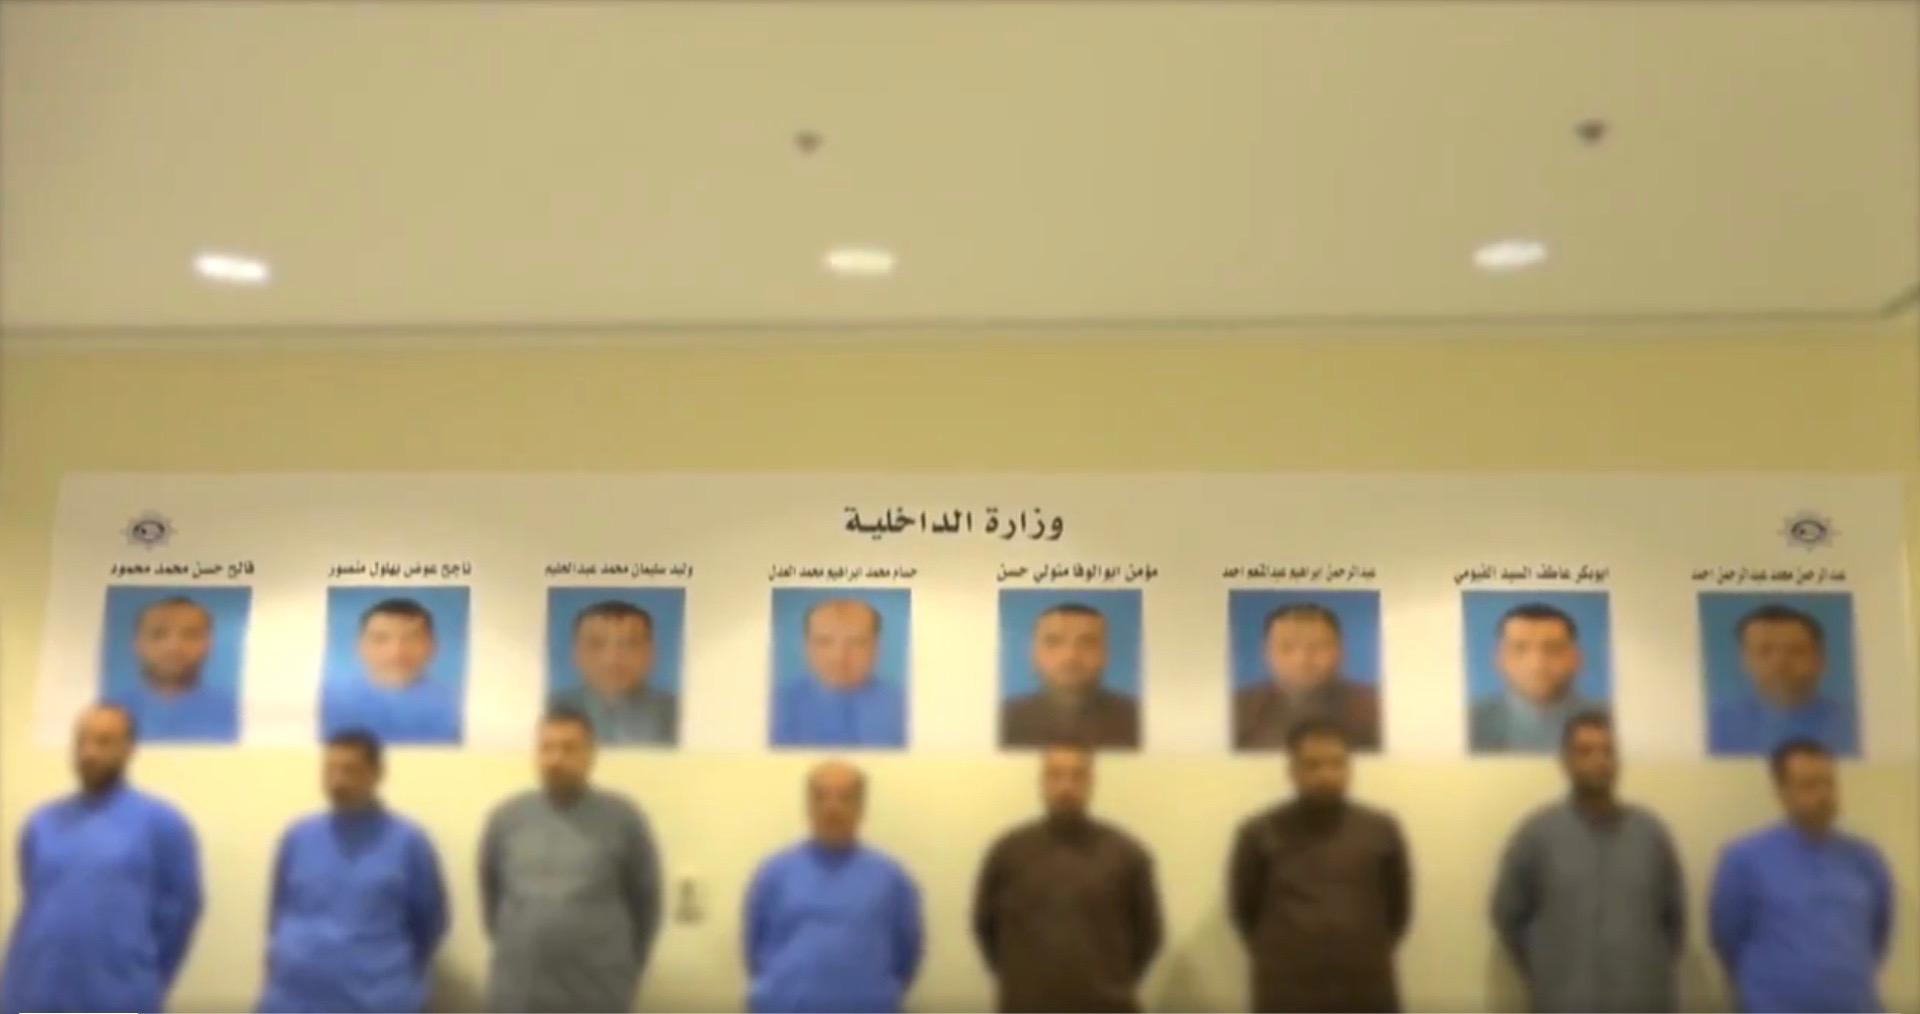 أصدرت وزارة الداخلية الكويتية فيديو تقول فيه إن الرجال الثمانية مطلوبون في مصر لجرائم جنائية. نُشِر الفيديو في الأصل على صفحة وزارة الداخلية الكويتية على "يوتيوب".